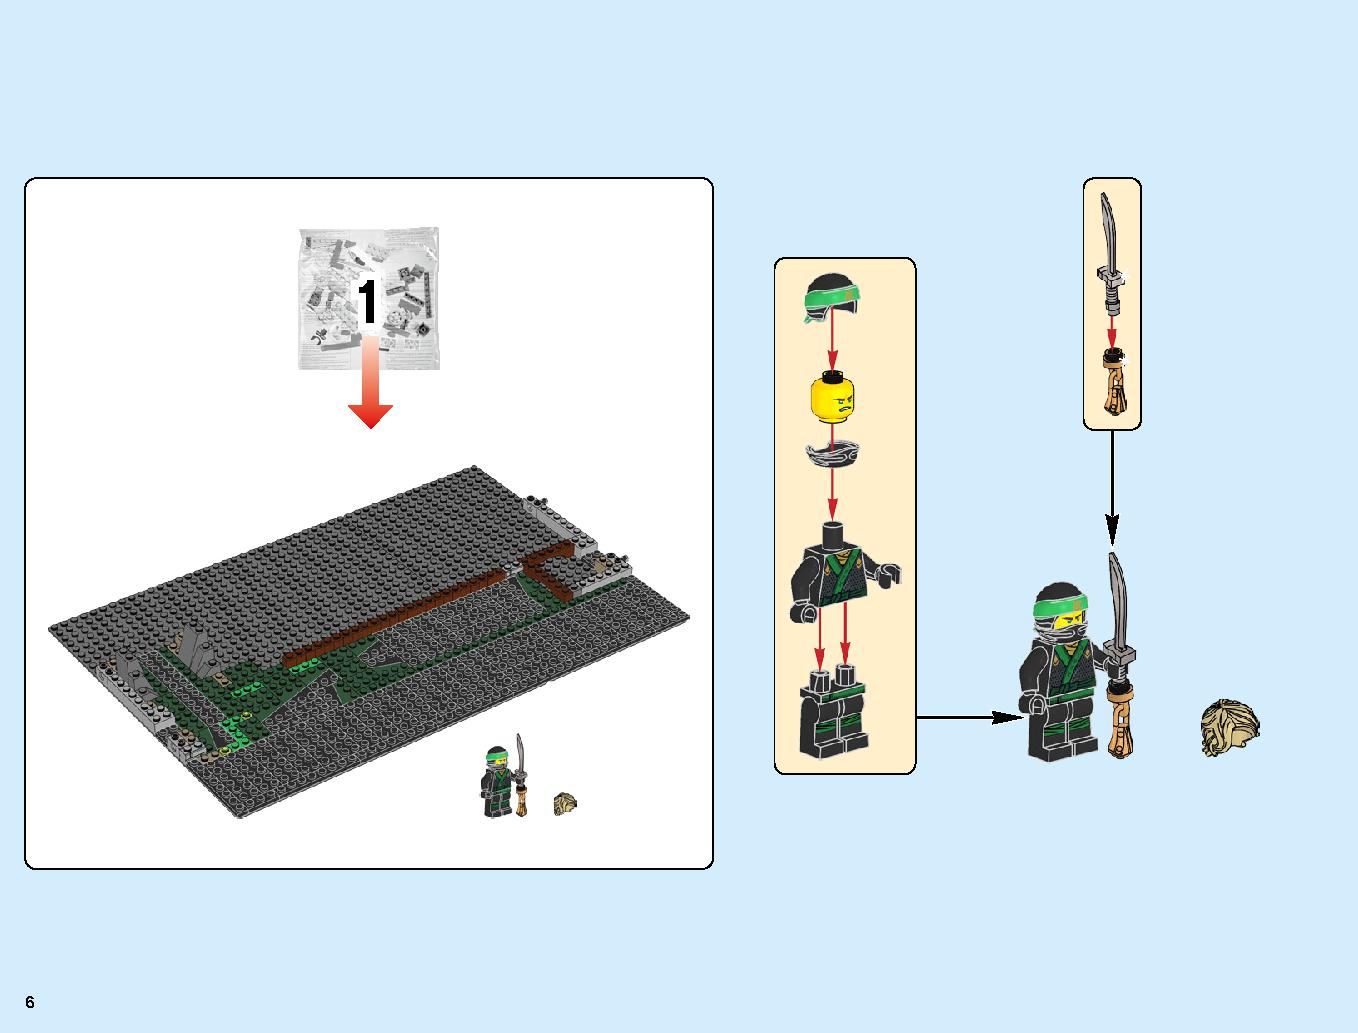 ニンジャゴーシティ・ポートパーク 70657 レゴの商品情報 レゴの説明書・組立方法 6 page